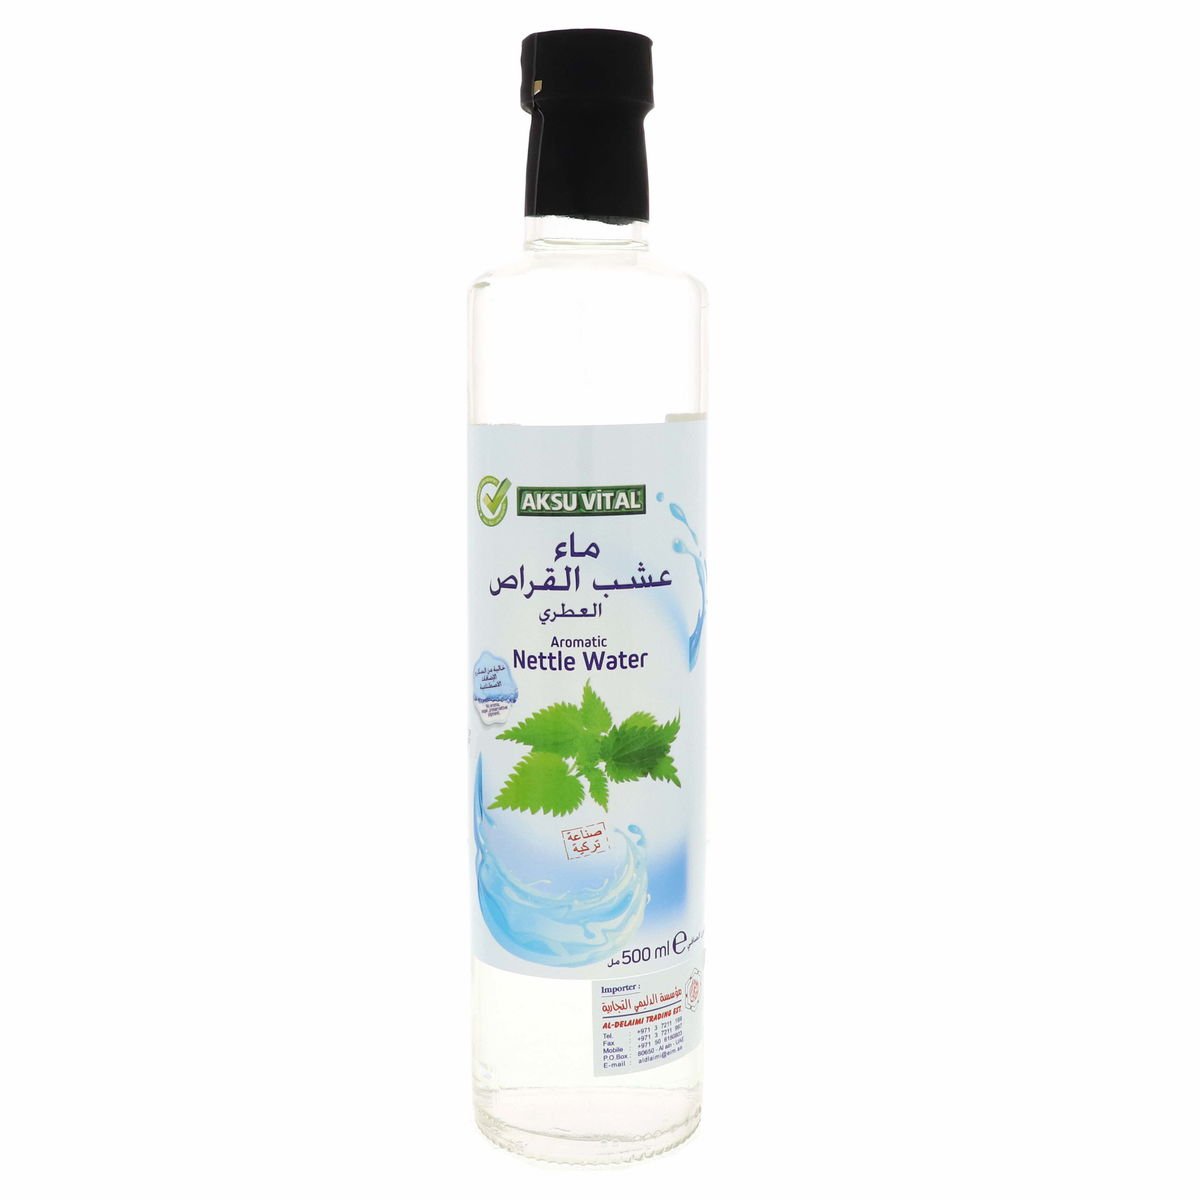 Aksu Vital Aromatic Nettle Water 500 ml